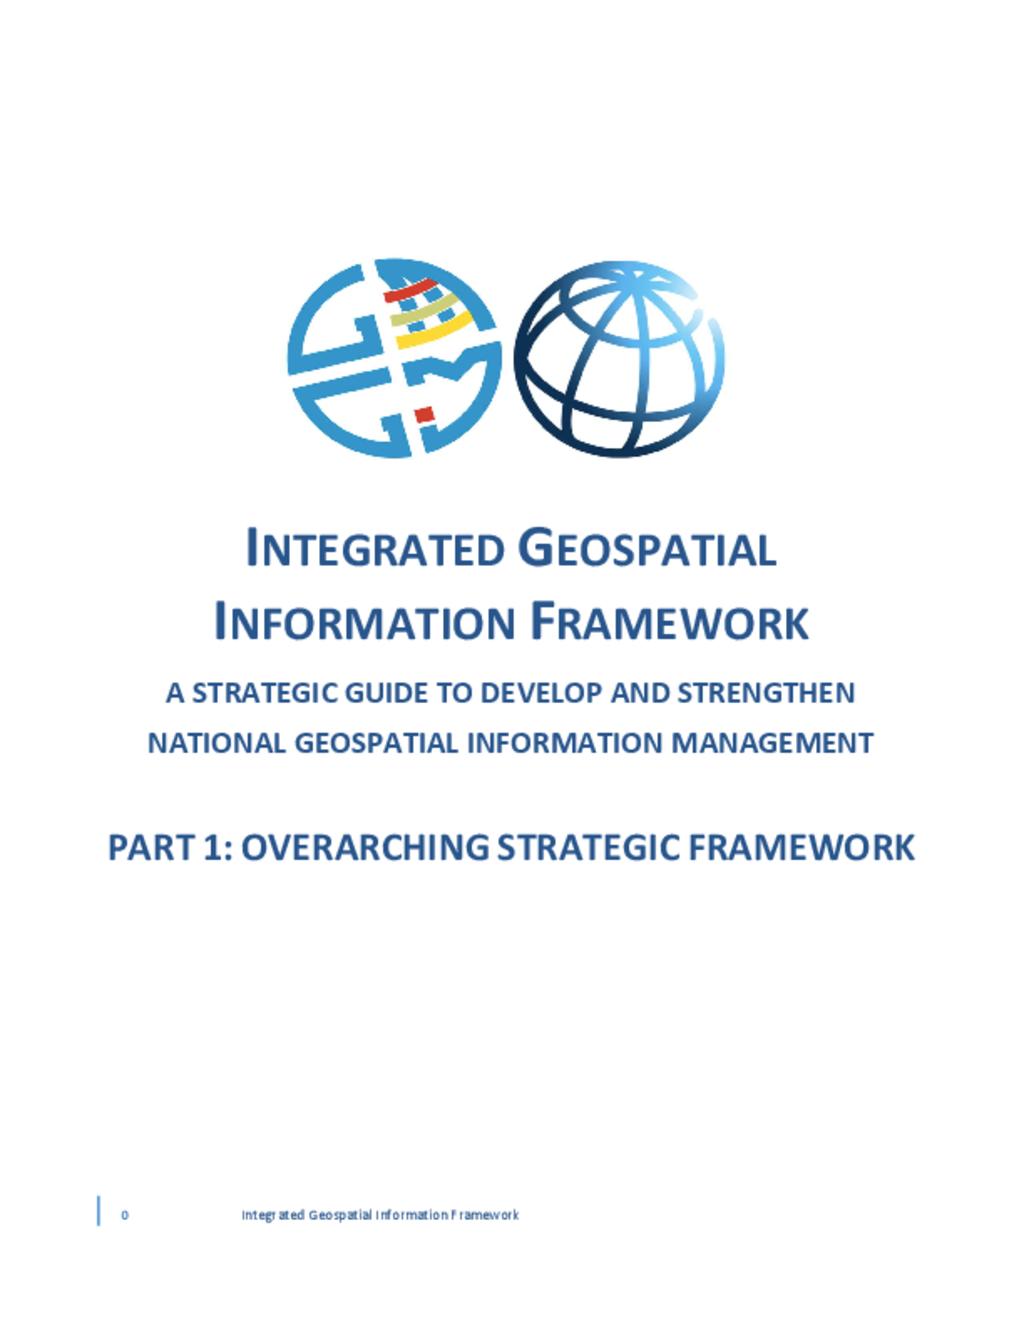 Framework for GIS